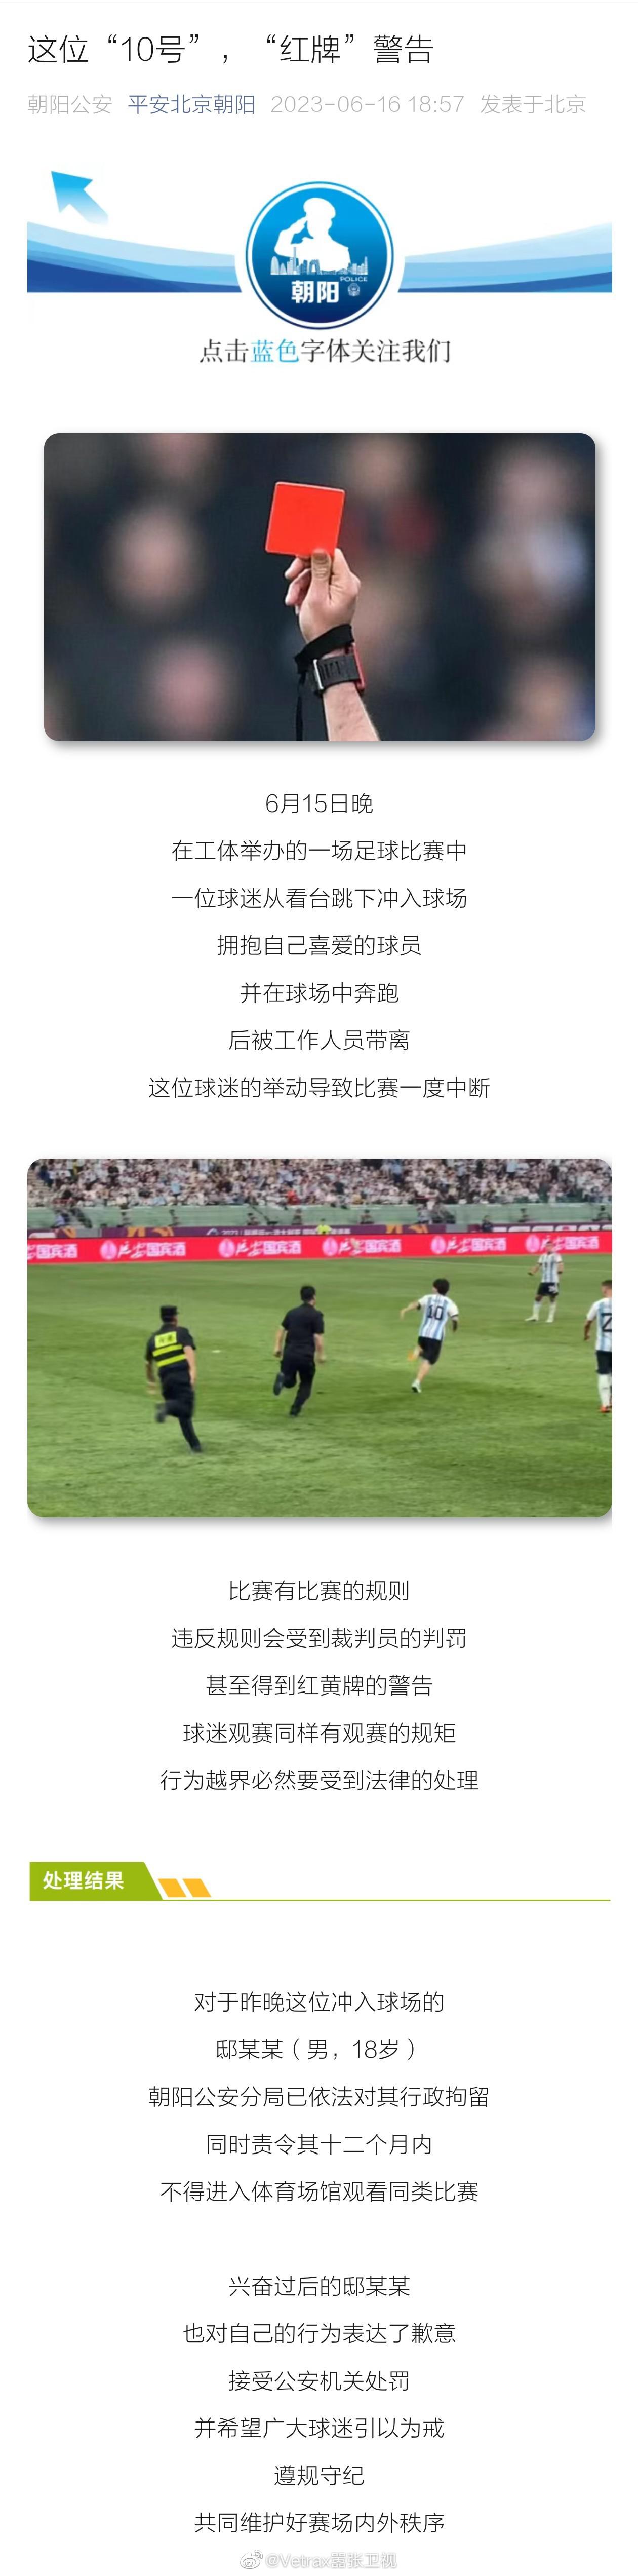 昨晚球迷闯入现场拥抱梅西的后续来了：平安北京朝阳通报，  6月15日晚，在工体举(1)